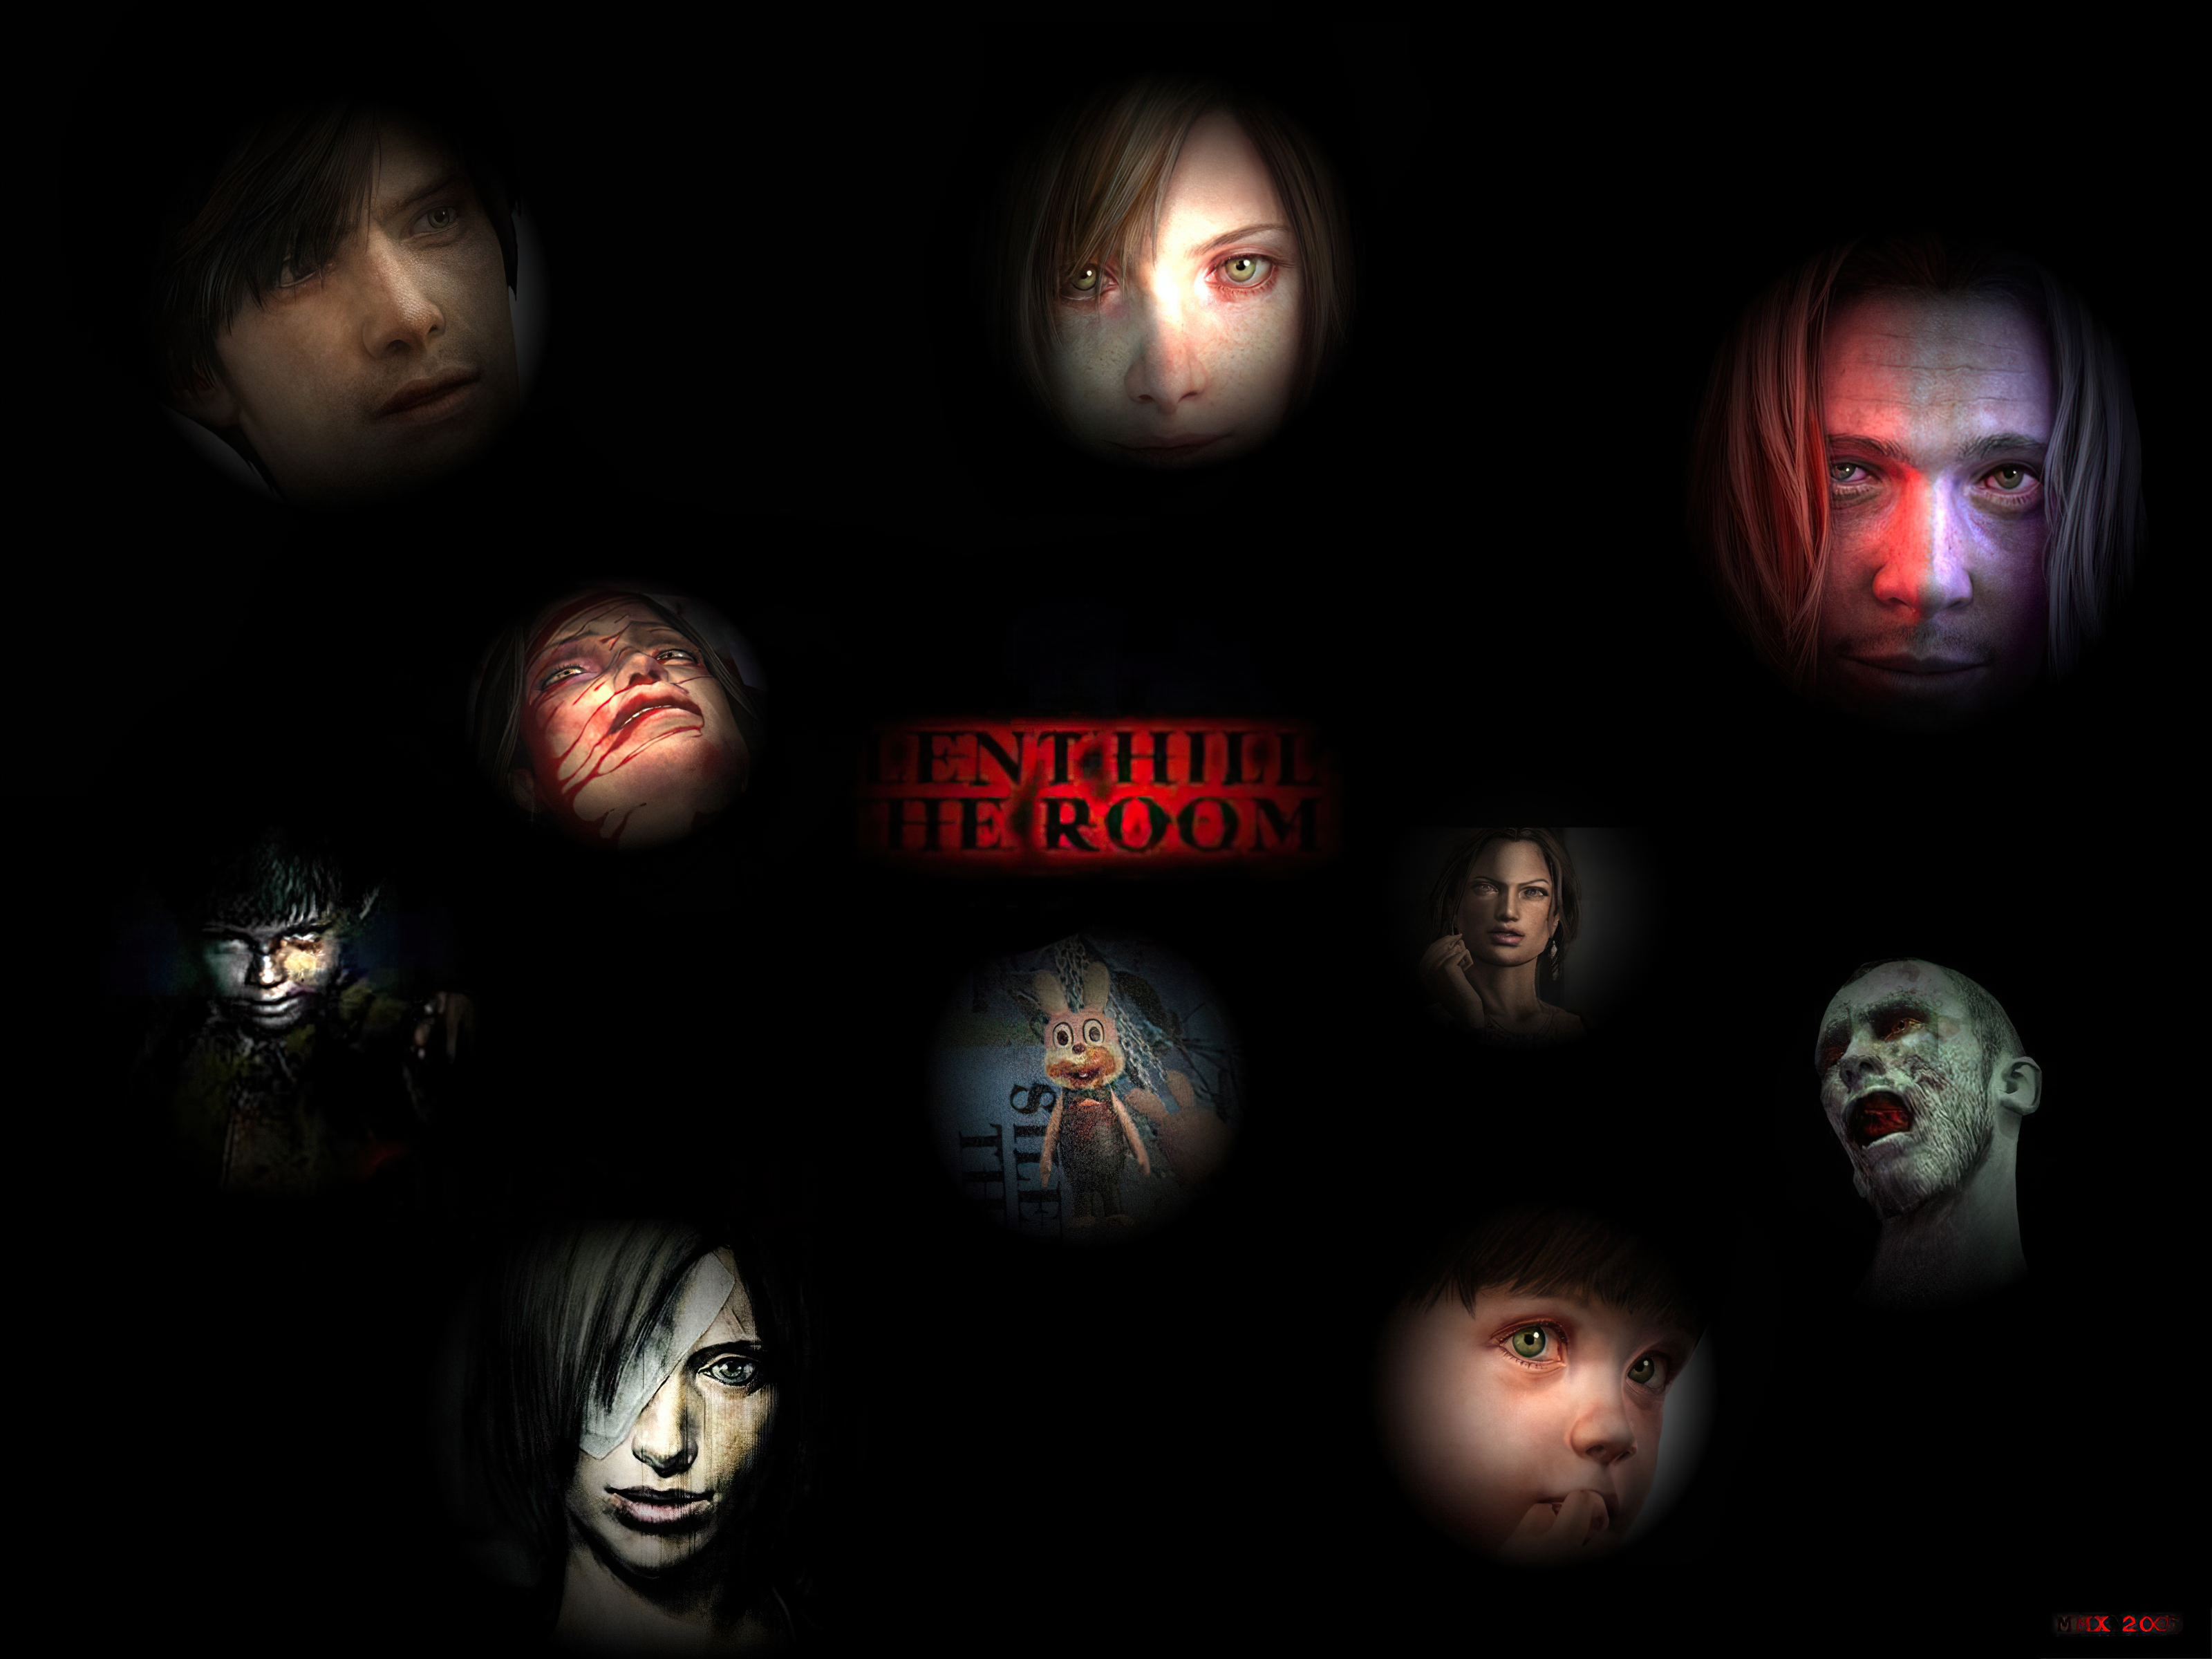 Die besten Silent Hill 4: The Room-Hintergründe für den Telefonbildschirm